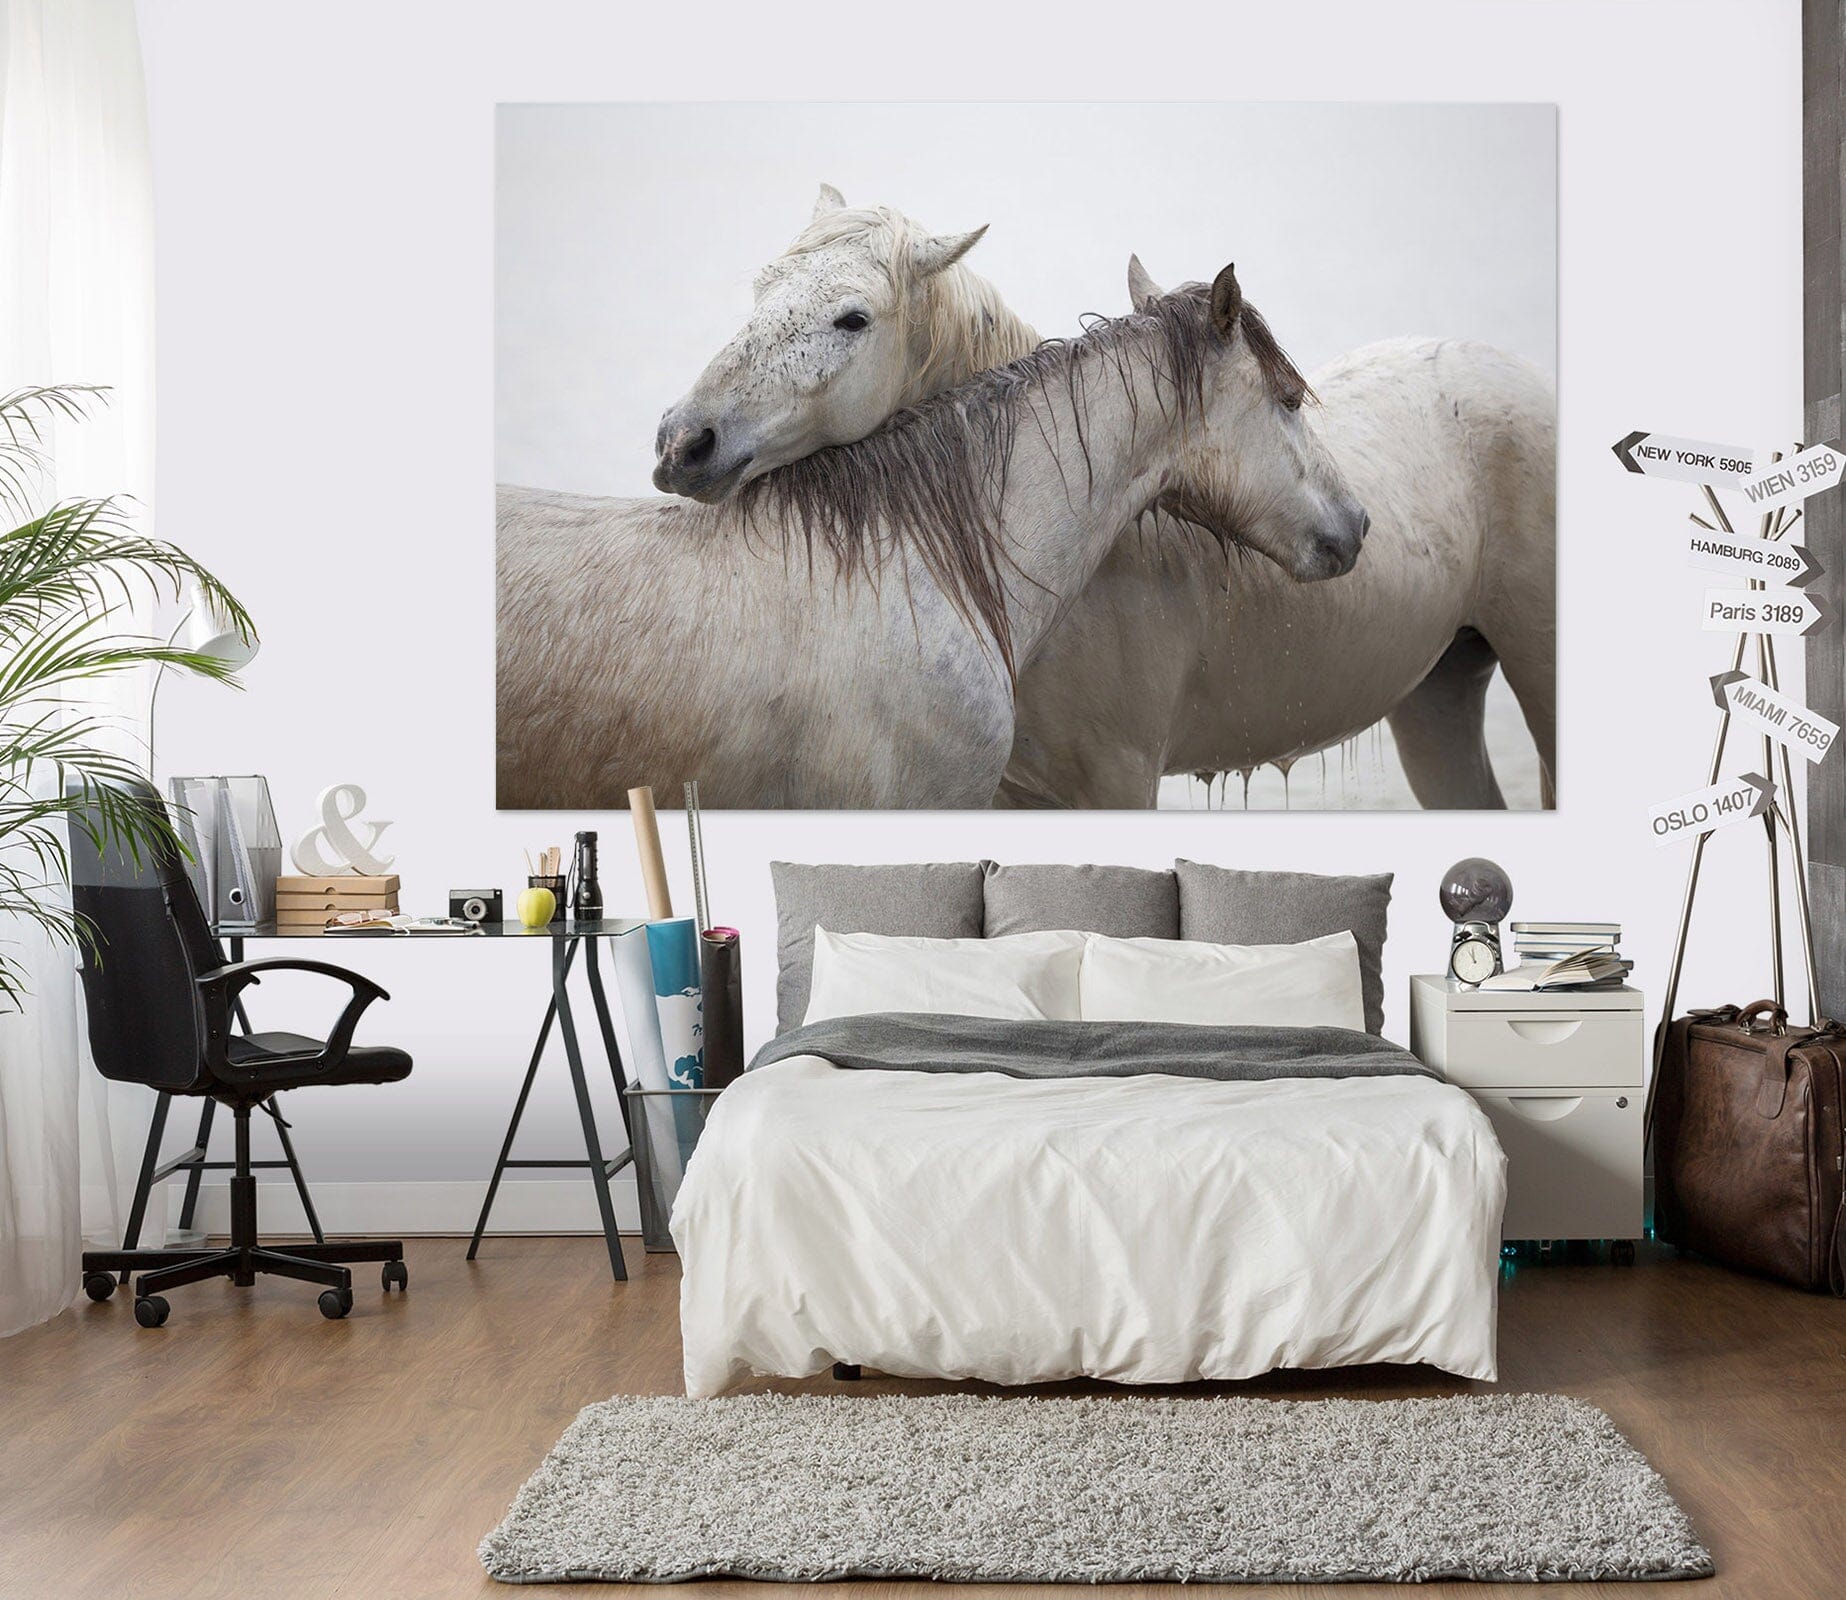 3D Two Horses 125 Marco Carmassi Wall Sticker Wallpaper AJ Wallpaper 2 